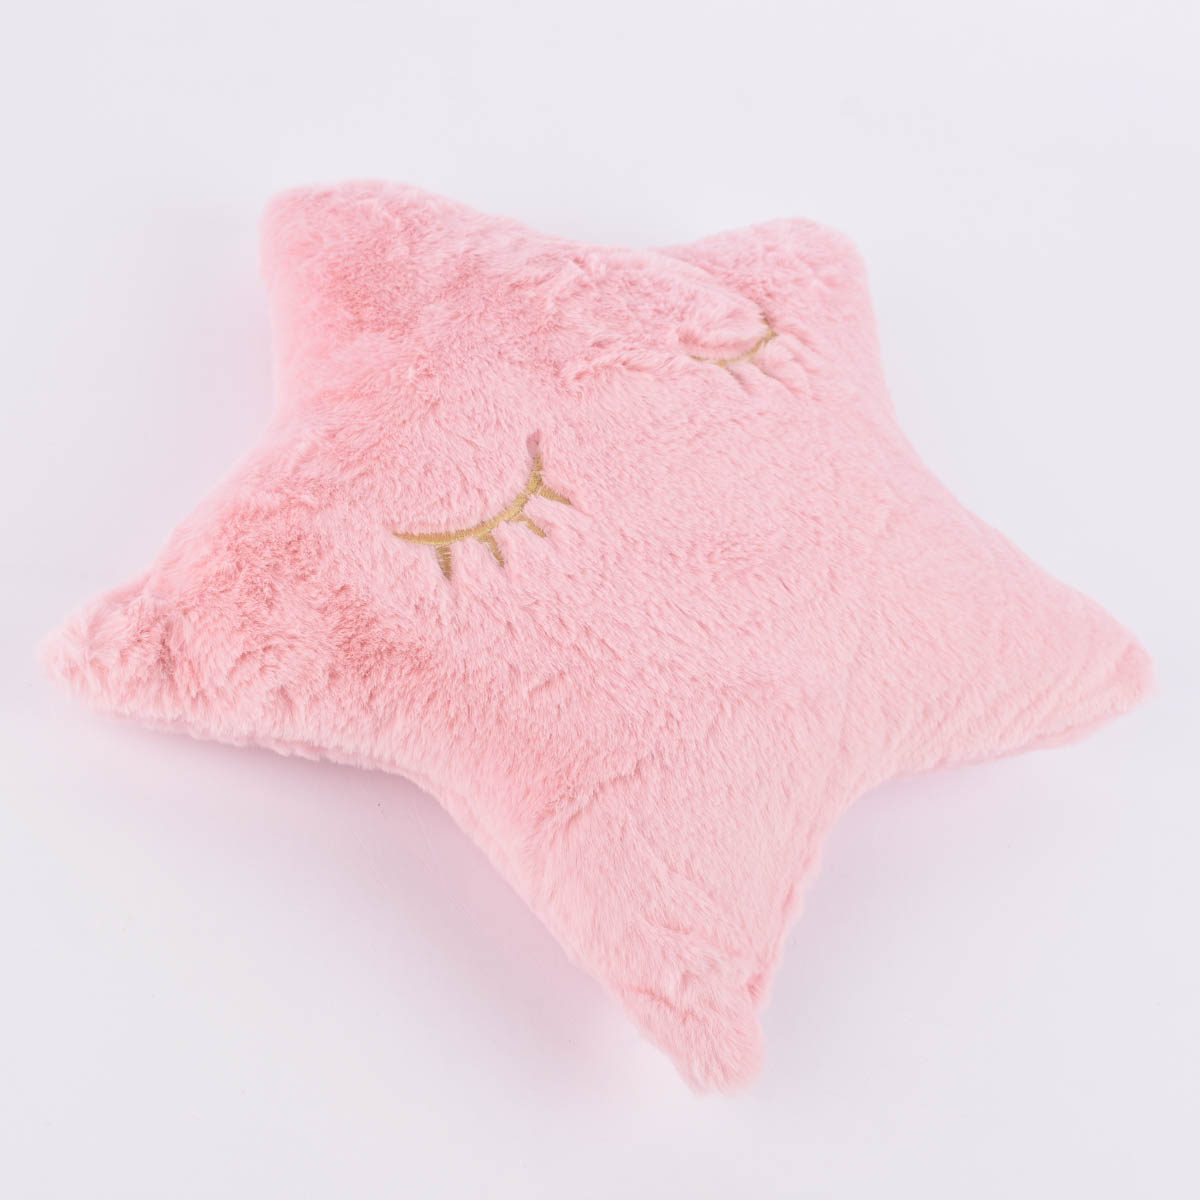 Plüschkissen Kinder Kissen Stern mit Schlafaugen bestickt rosa goldfarbig  35x37cm